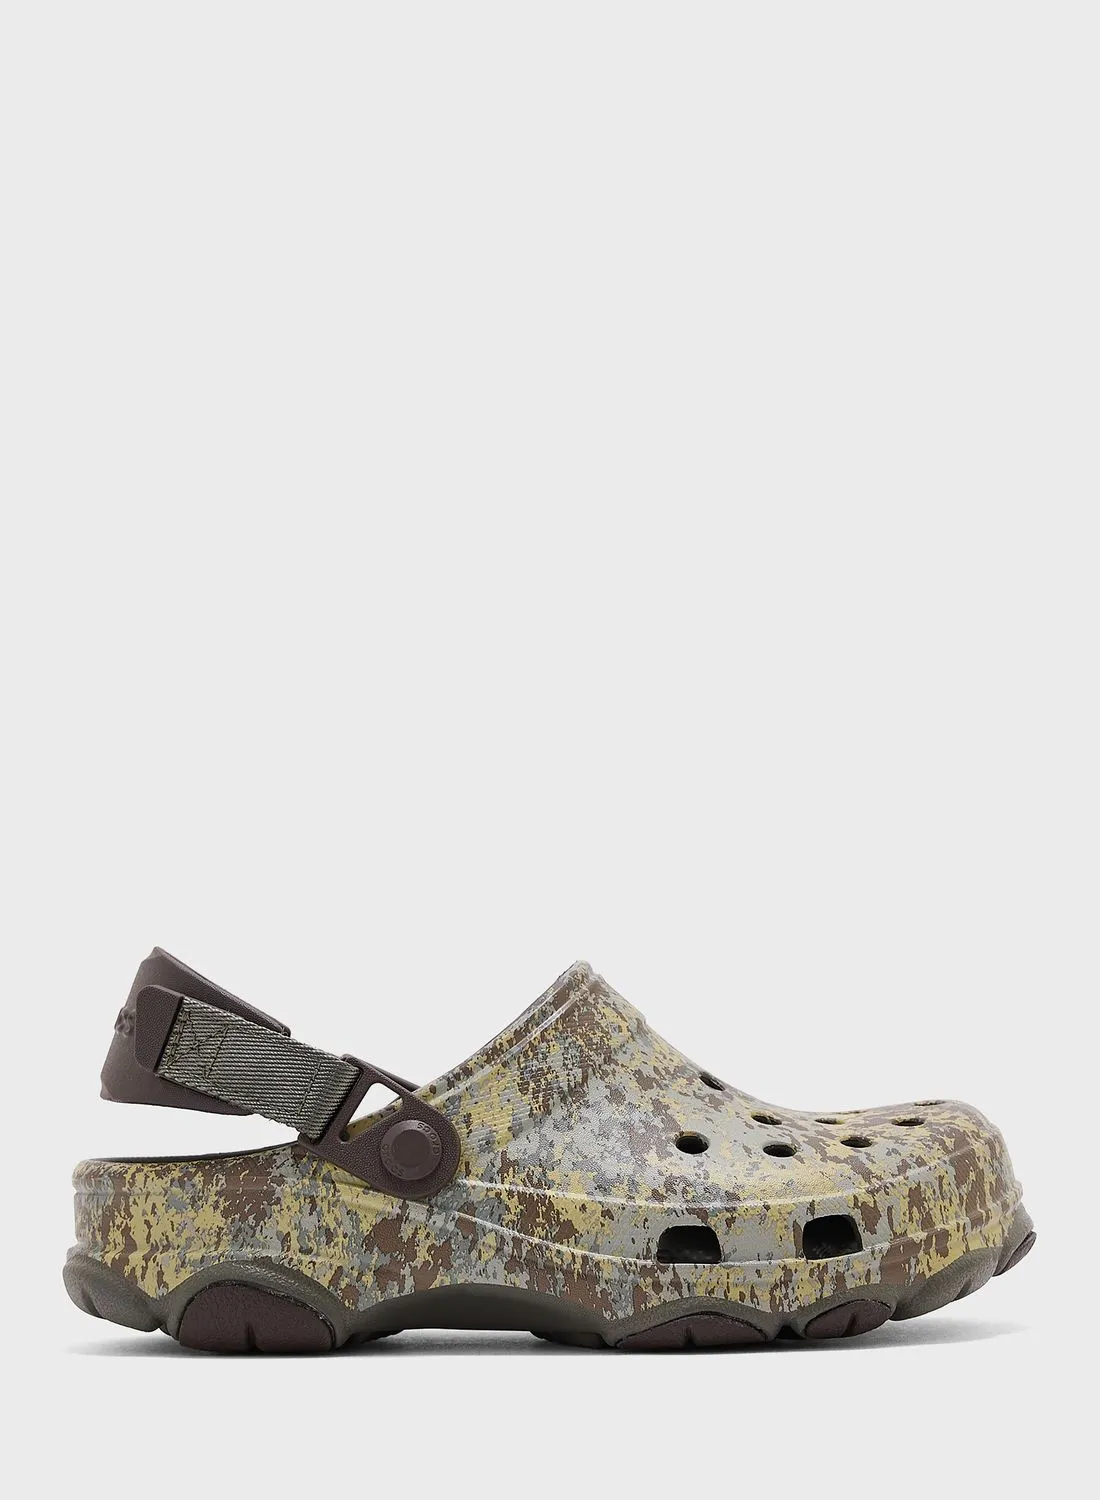 crocs Casual Clog Sandals